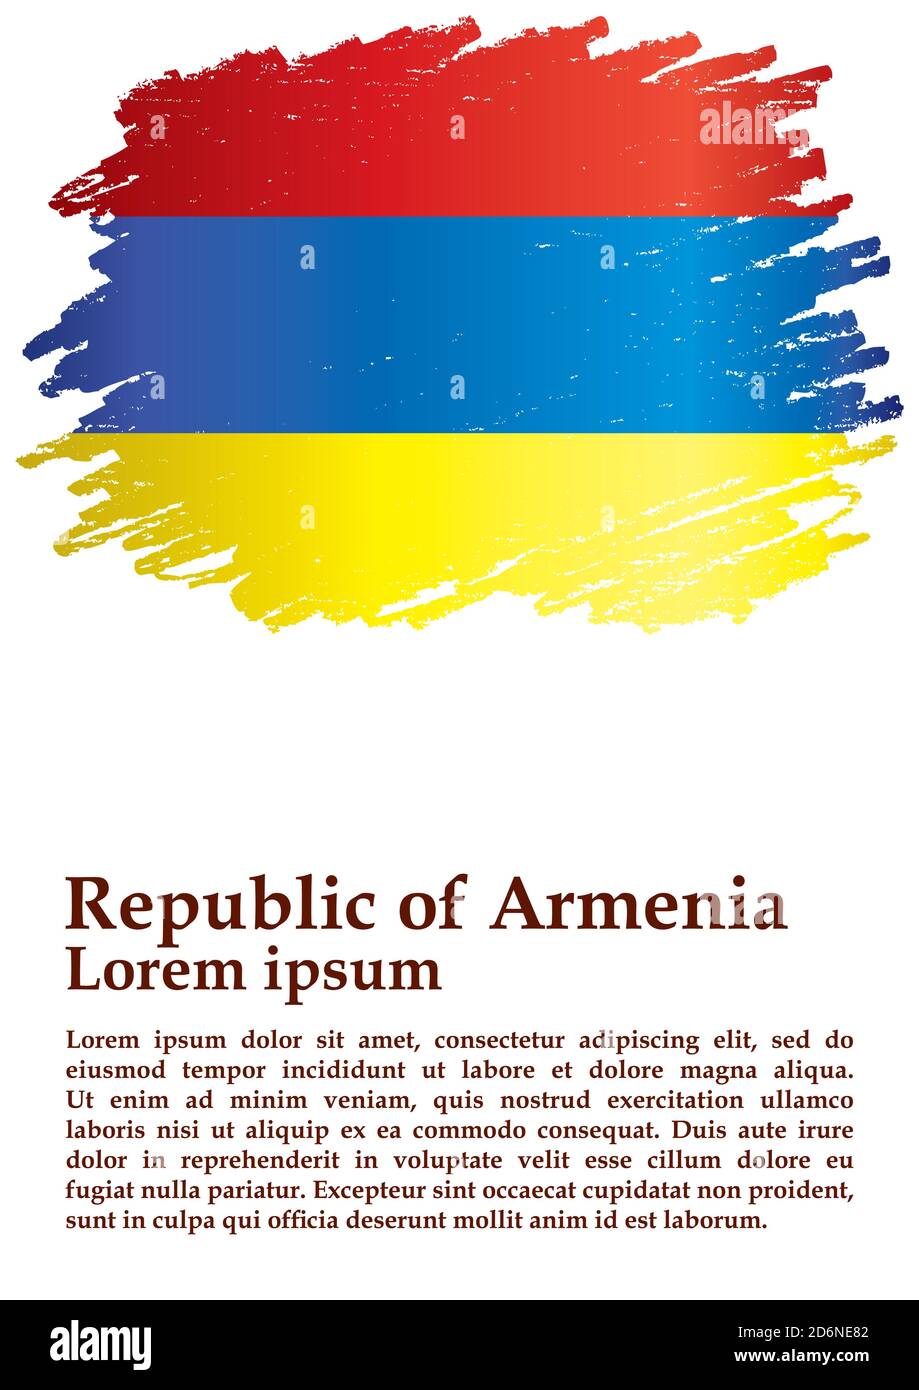 Bandiera di Armenia, Repubblica di Armenia. Modello per il disegno di premio, un documento ufficiale con la bandiera di Armenia. Illustrazione vettoriale luminosa e colorata Illustrazione Vettoriale